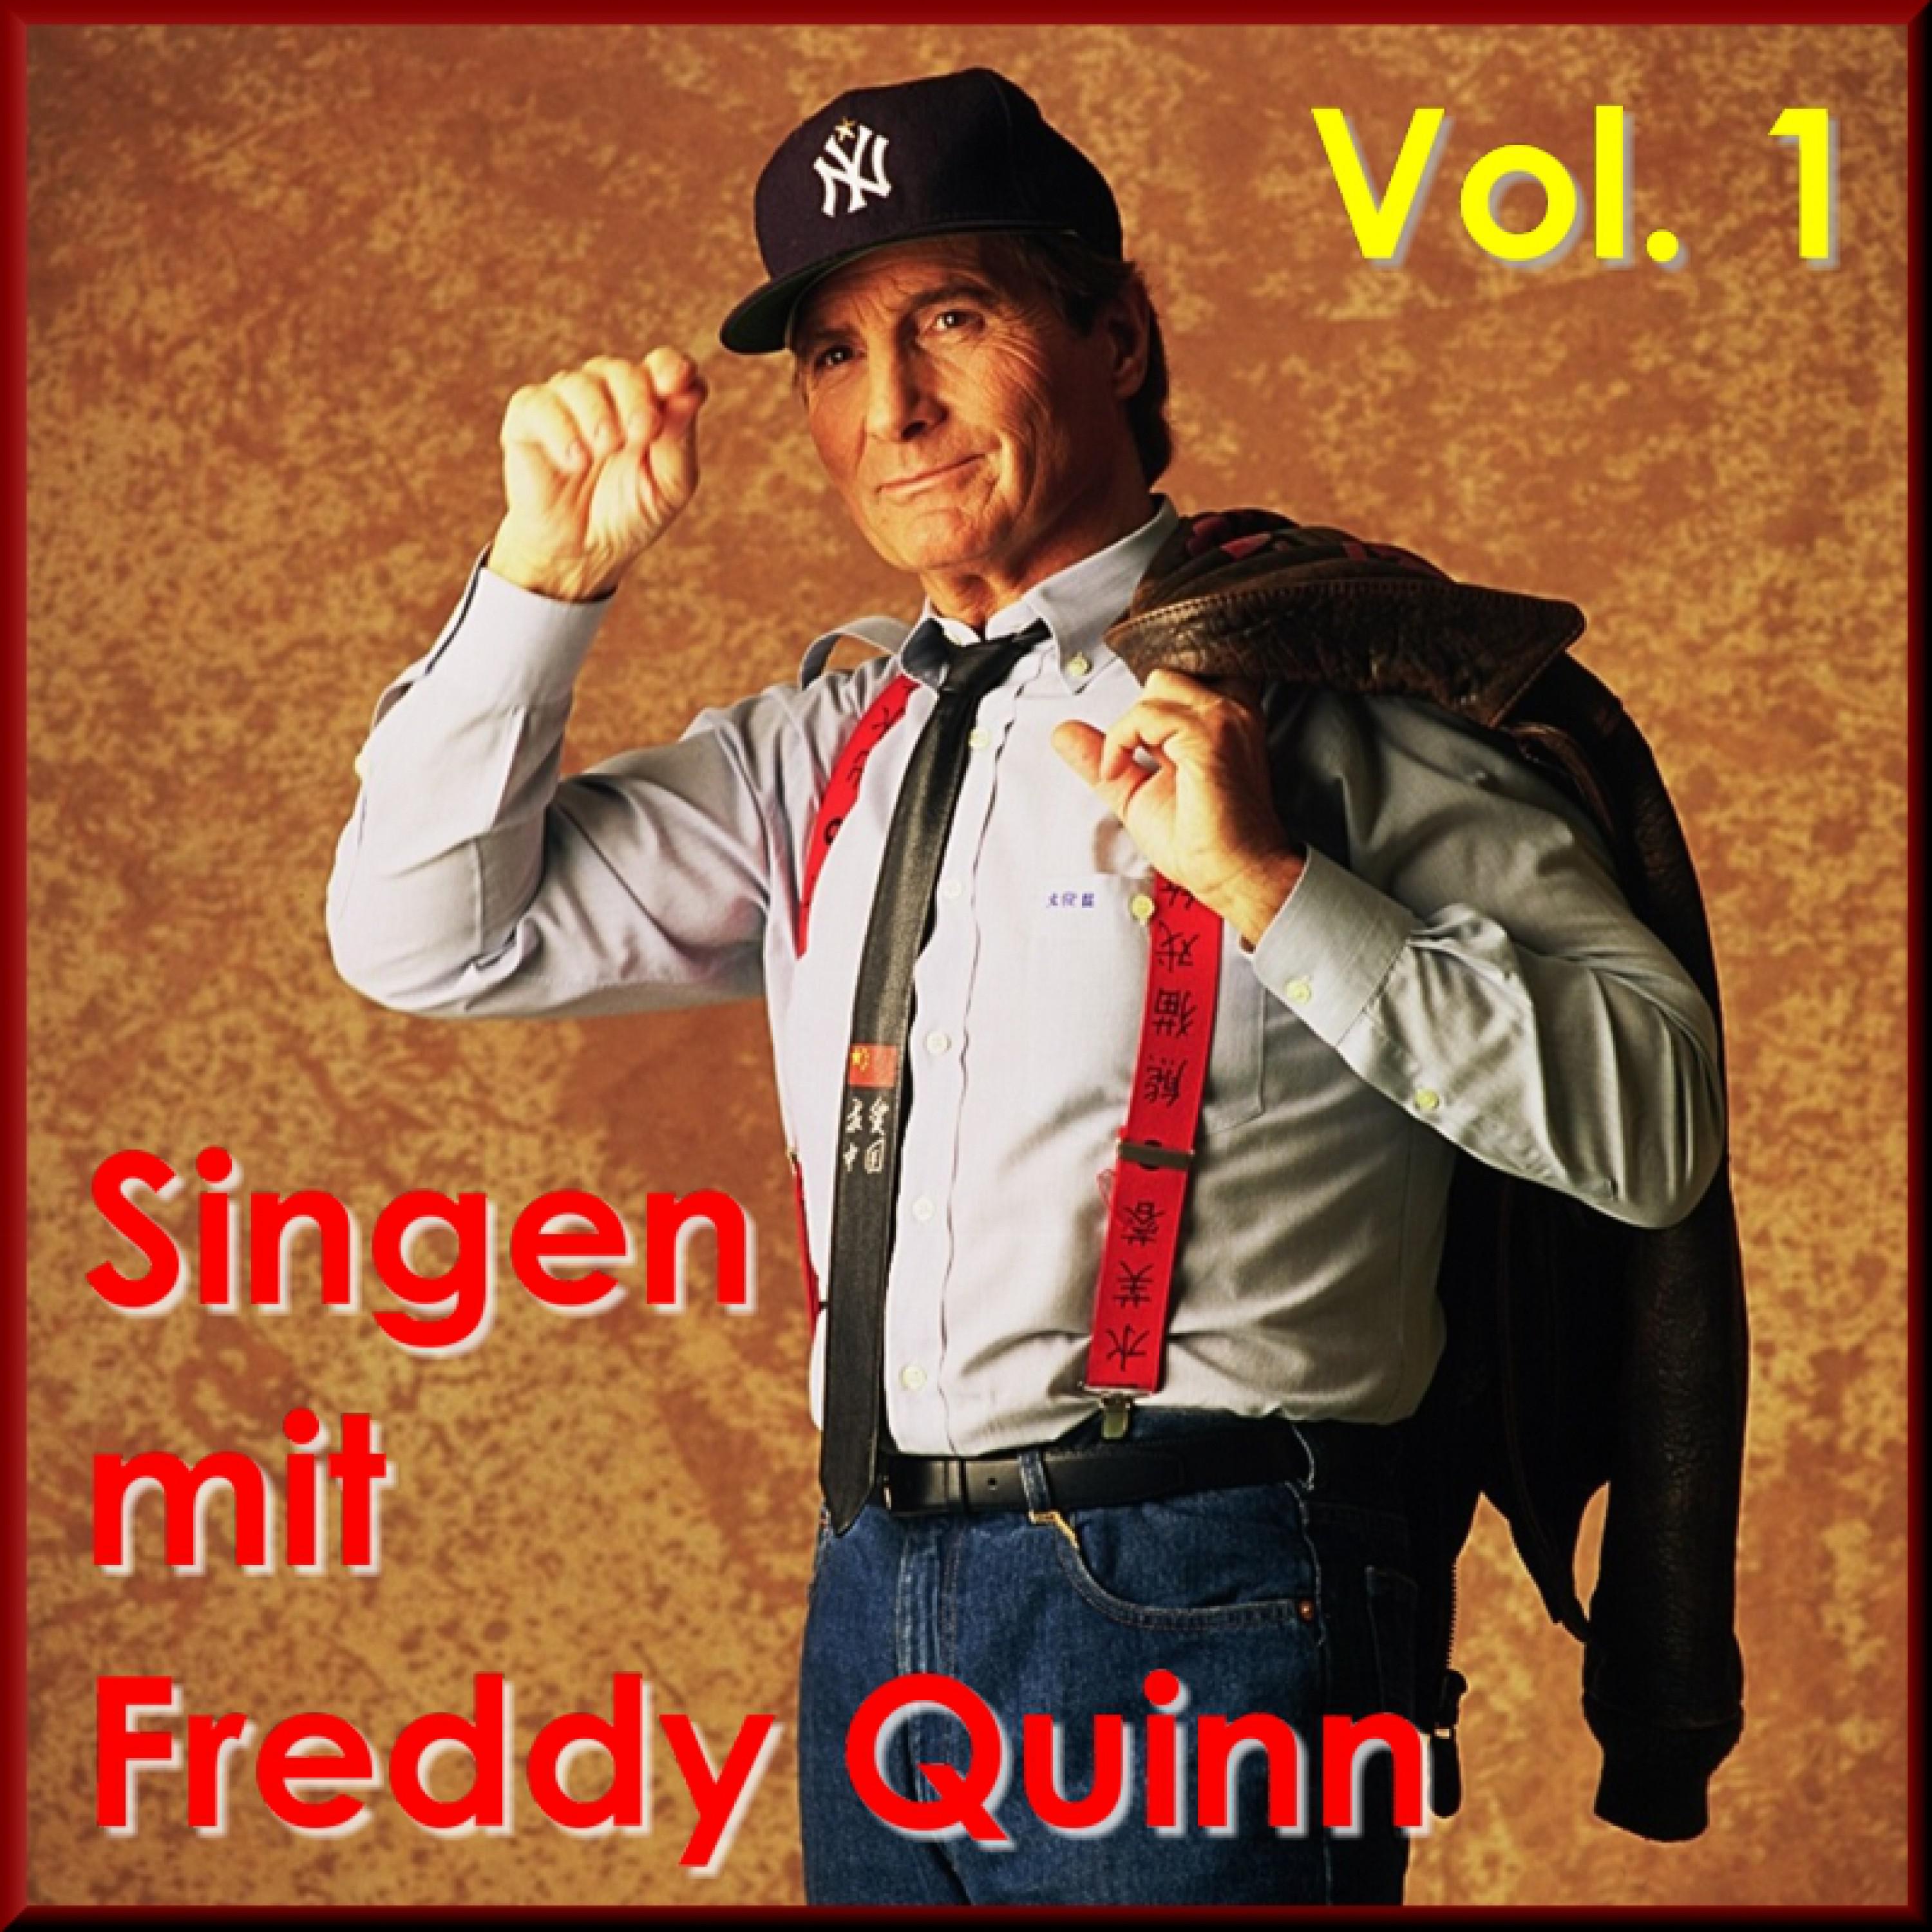 Die Freiheit der Berge (Deutsche Version von "Old Smoky")